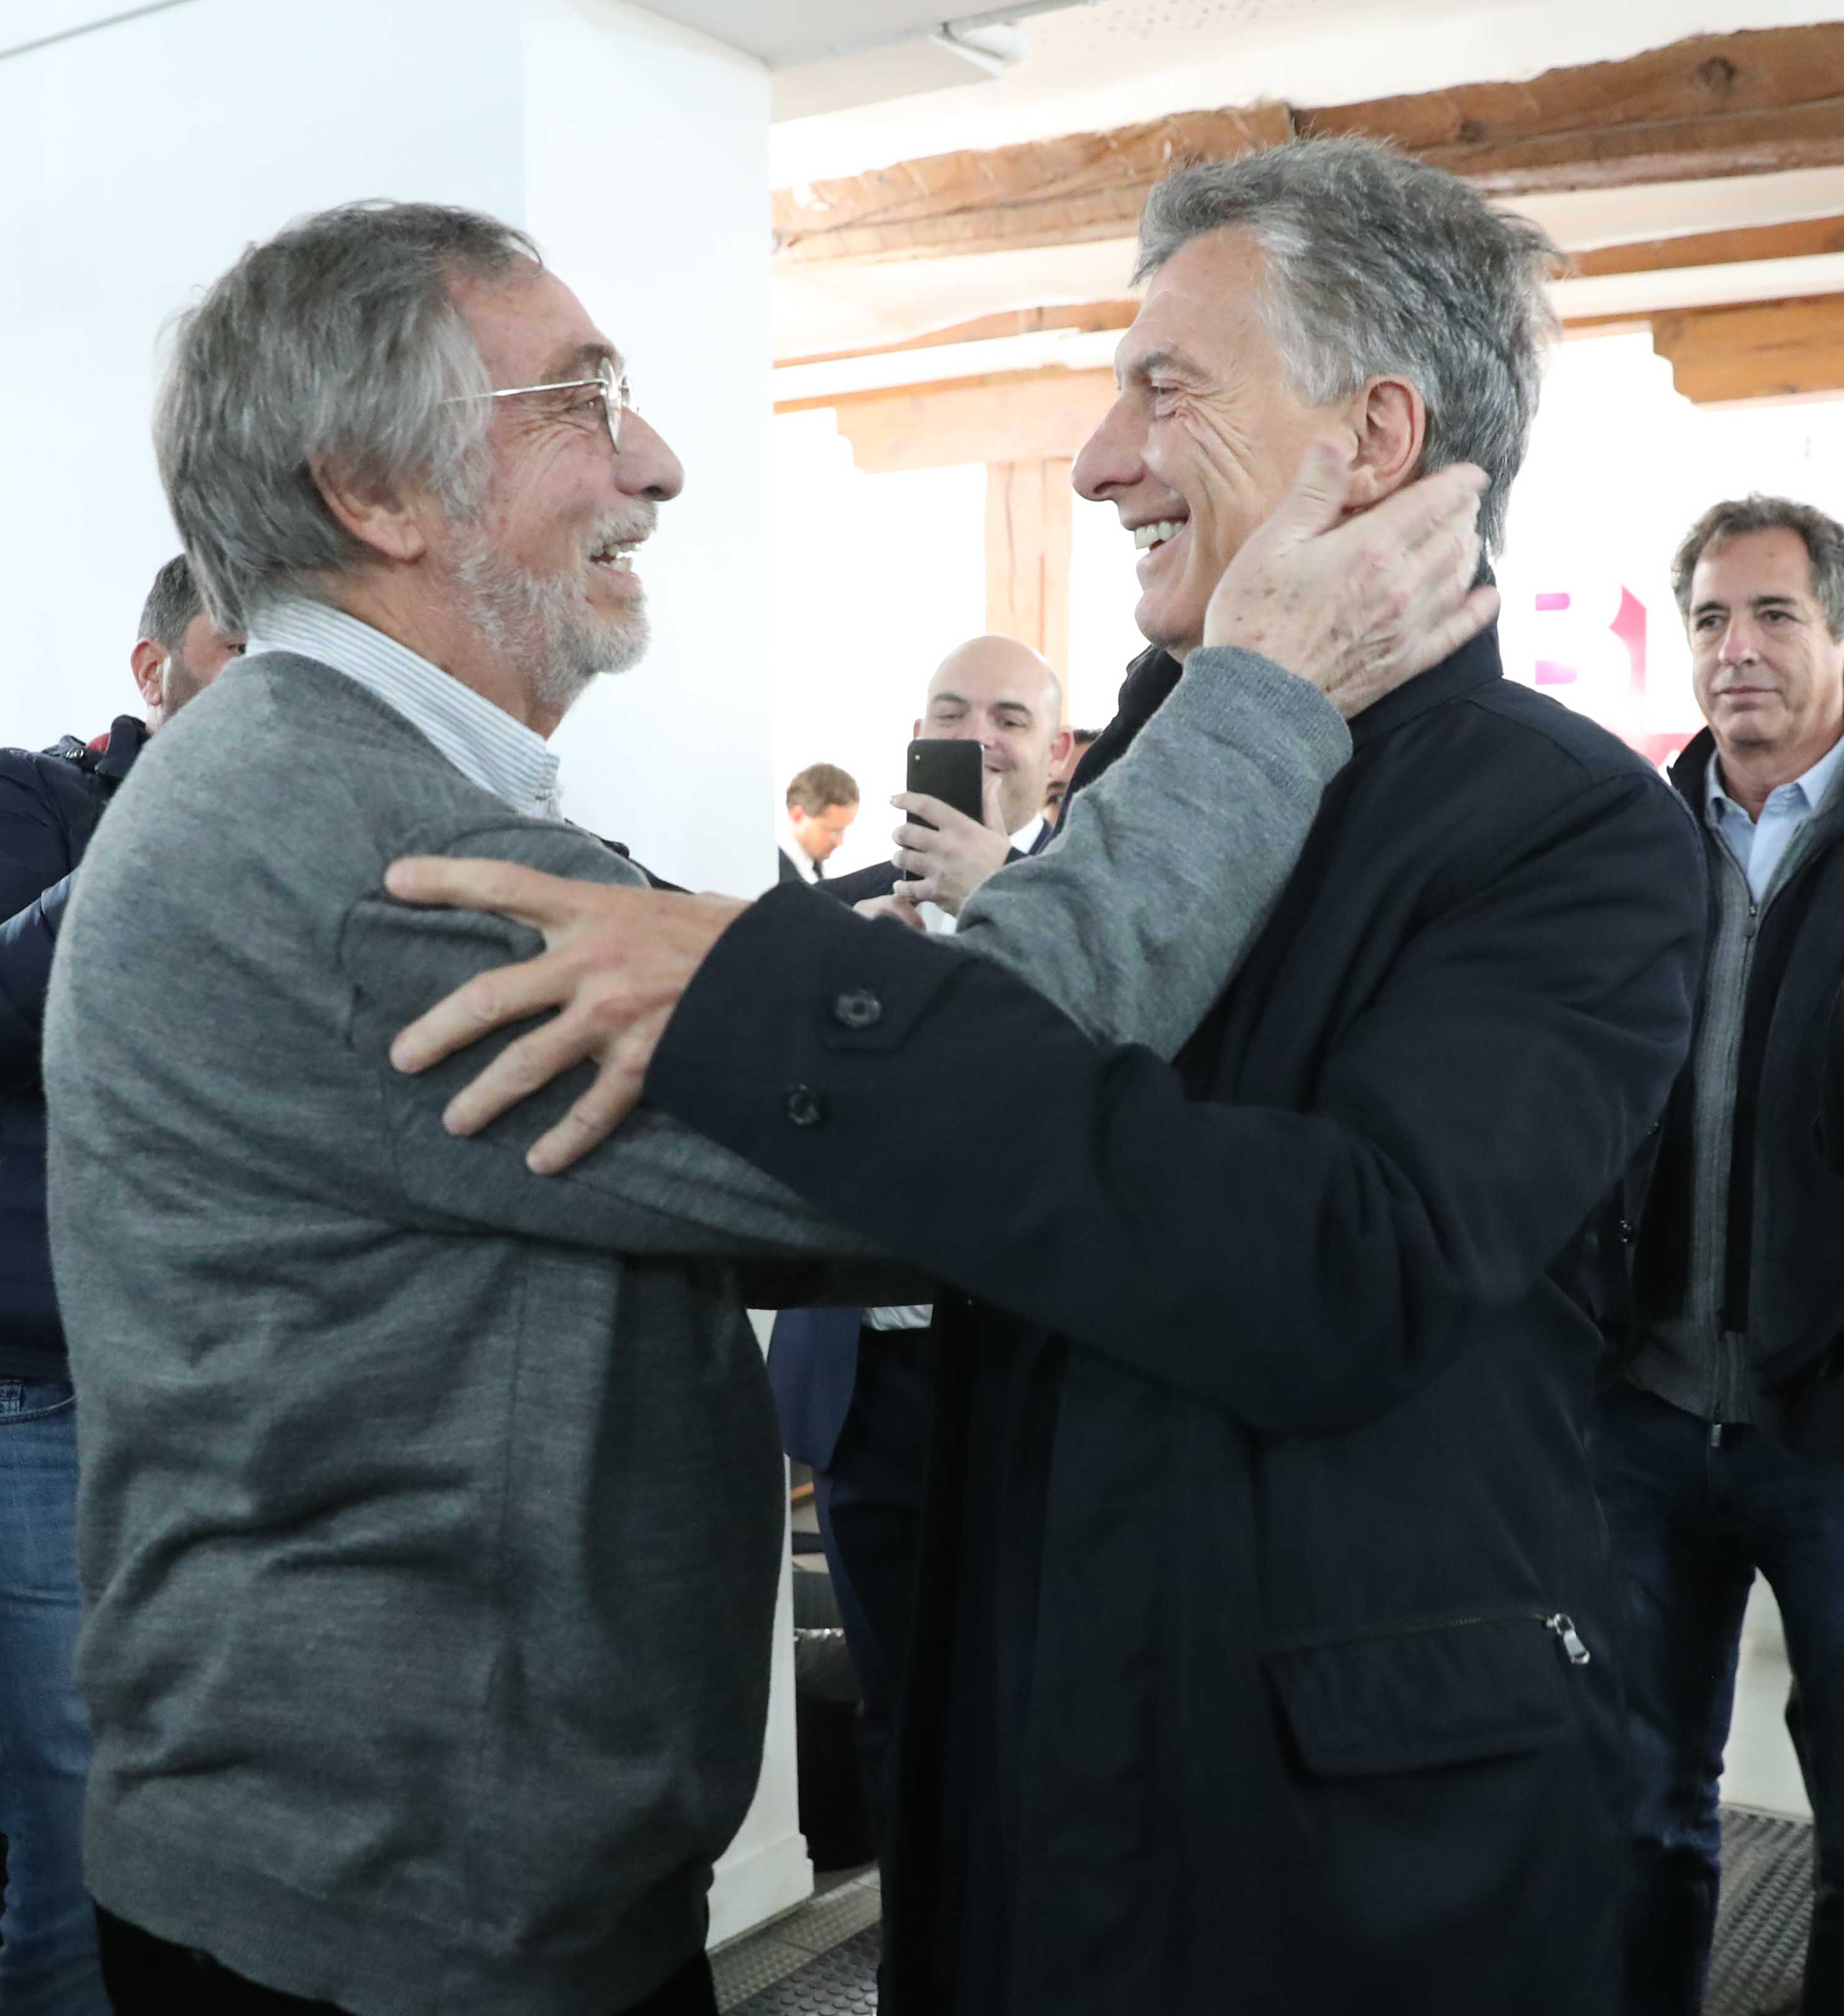 El Presidente Macri saludó al actor Luis Brandoni en un encuentro con residentes argentinos en España.